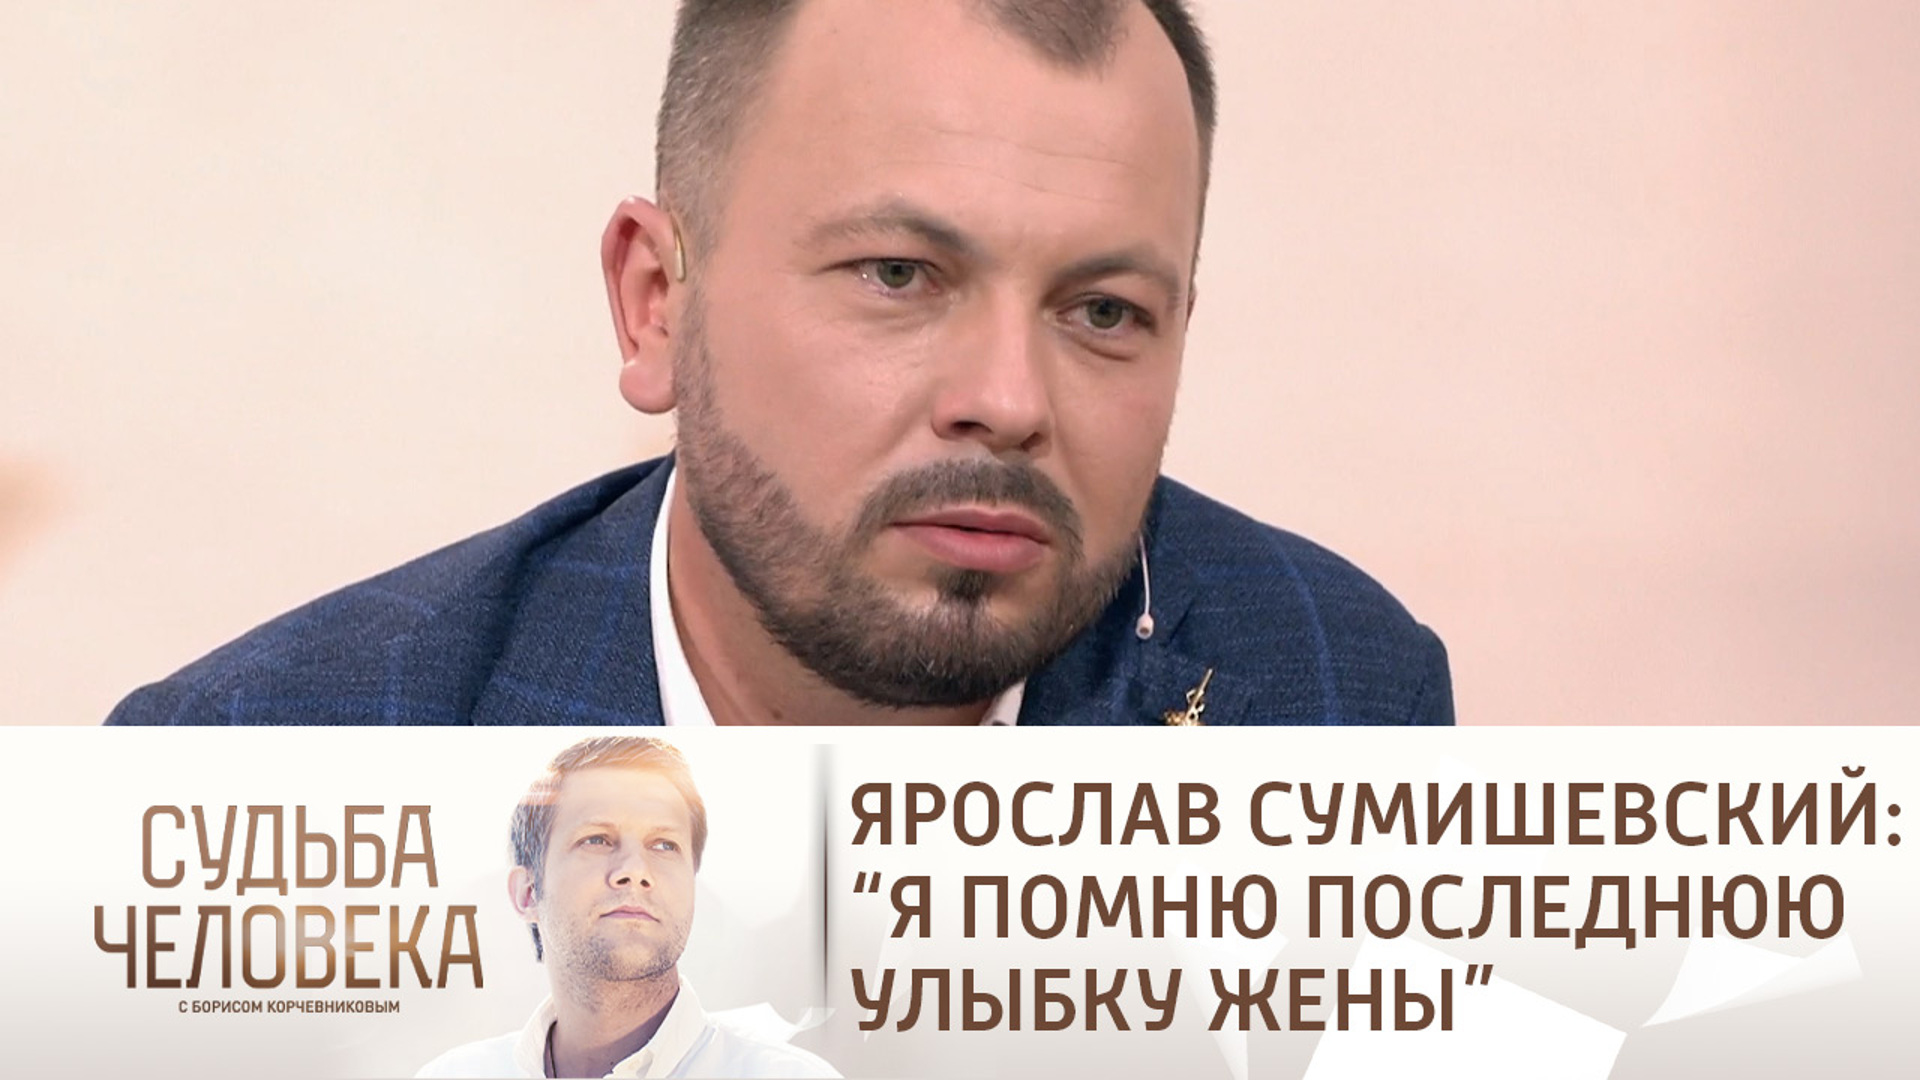 Судьба человека с Борисом Корчевниковым 2021